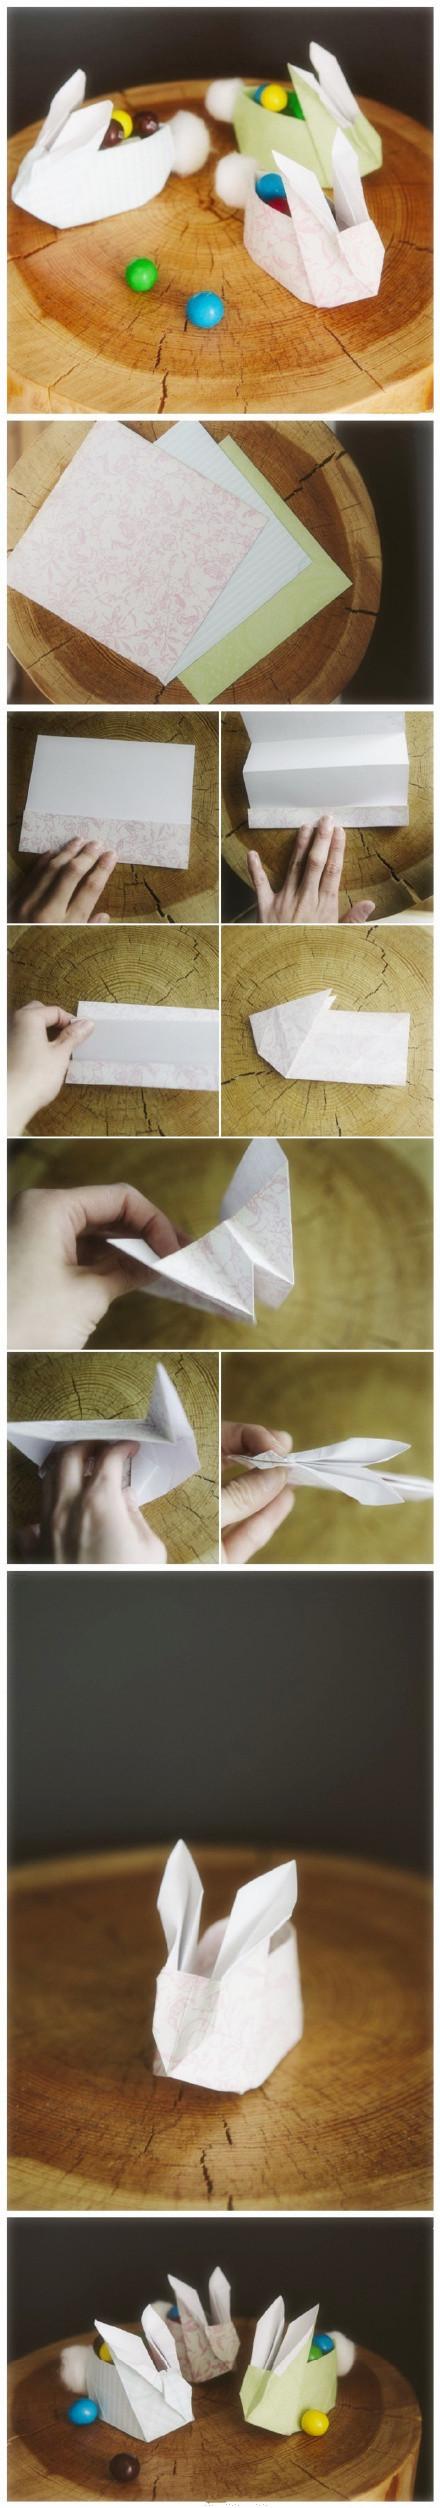 折纸收纳盒制作图解 多款实用的折纸收纳盒制作